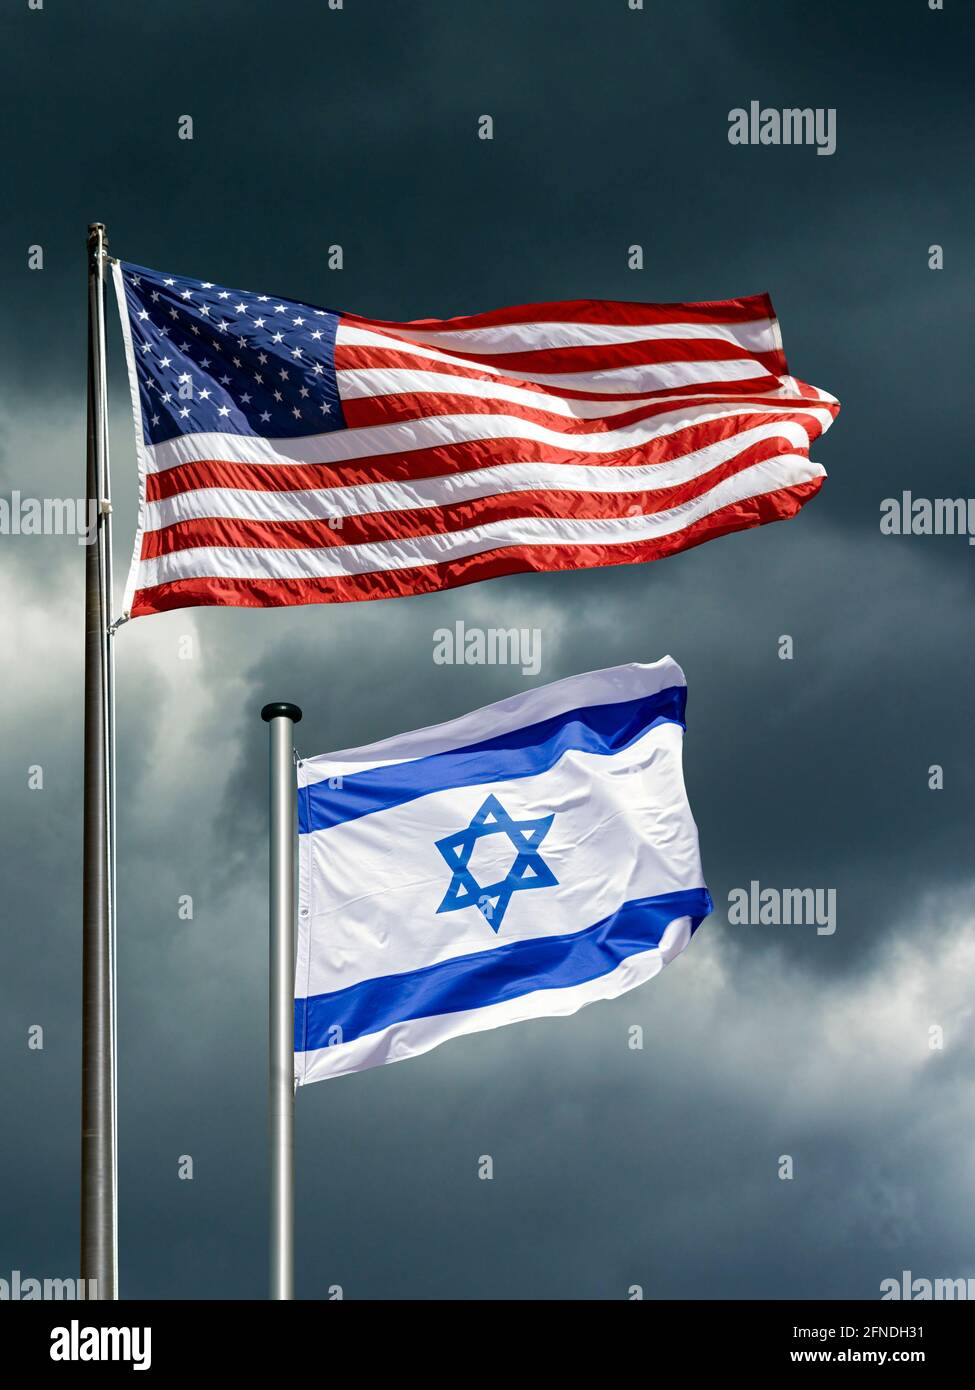 Bandiere di stato di USA e Israele che si flettono di fronte a un cielo oscuro e tempestoso, immagine simbolica per il partenariato tra Israele e gli Stati Uniti in tempi difficili Foto Stock